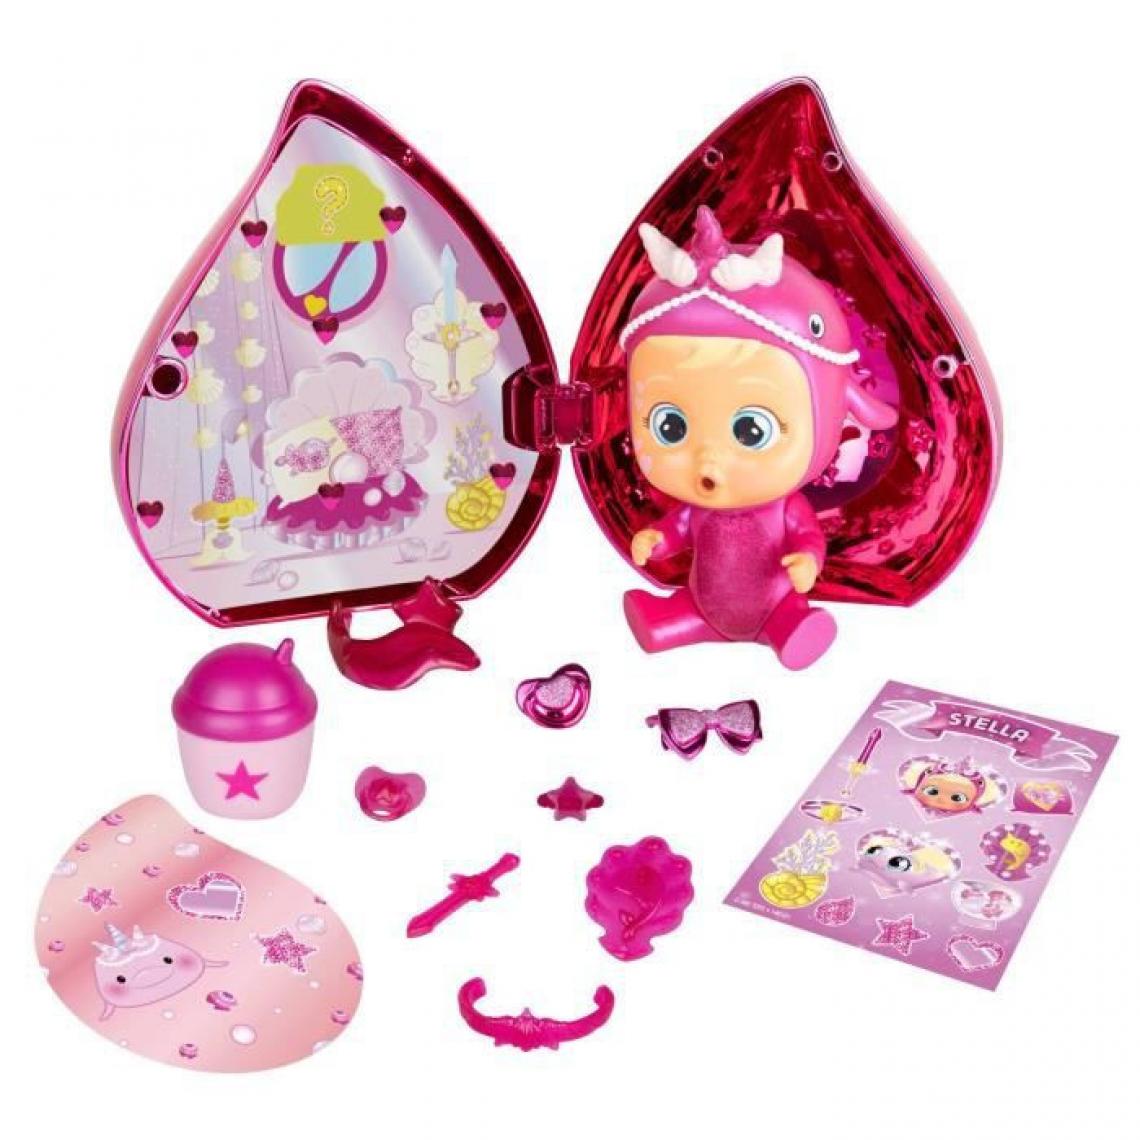 Imc Toys - IMC TOYS - Maison Rose + Poupon - CRY BABIES MAGIC TEARS - 81550 - Aléatoire - Poupons